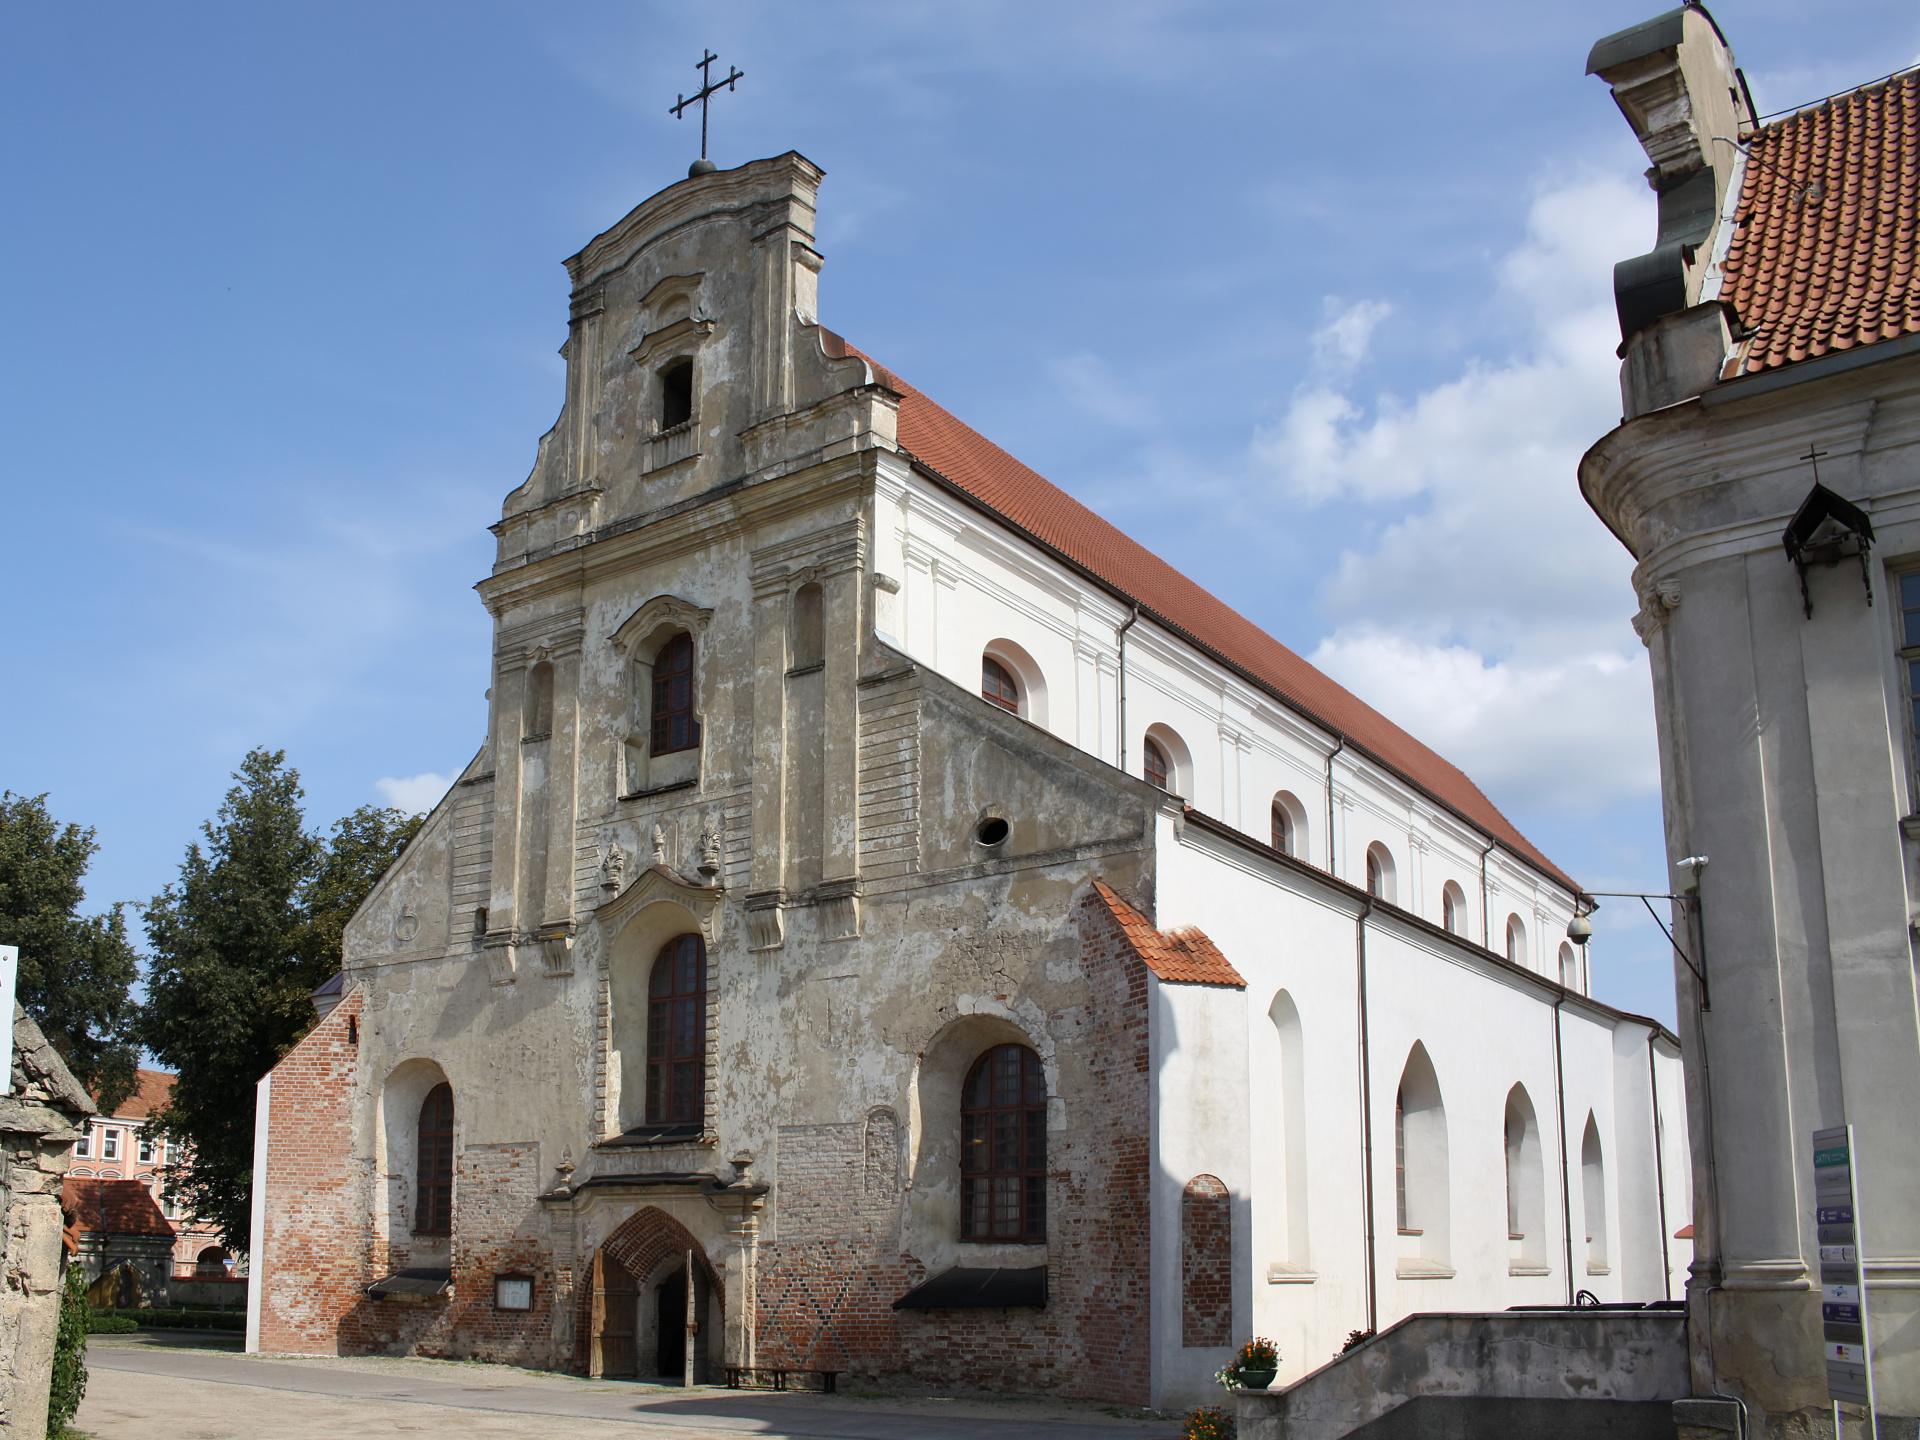 Kościół Wniebowzięcia Najświętszej Marii Panny (Podróże » Wilno » Kościoły i cerkwie)